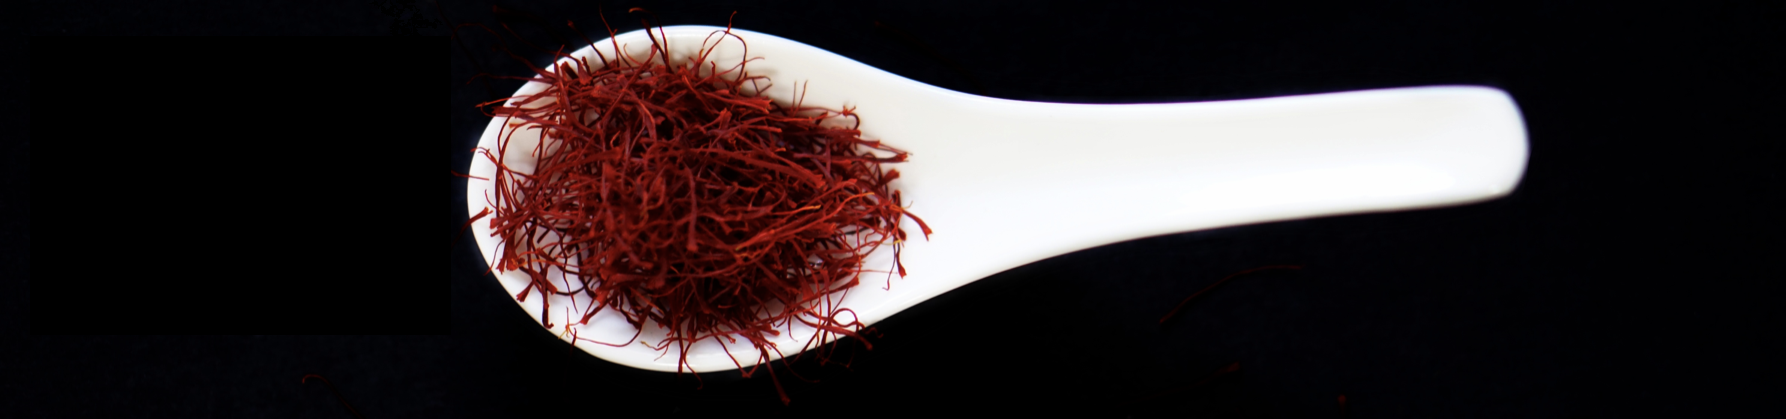 Export method of saffron